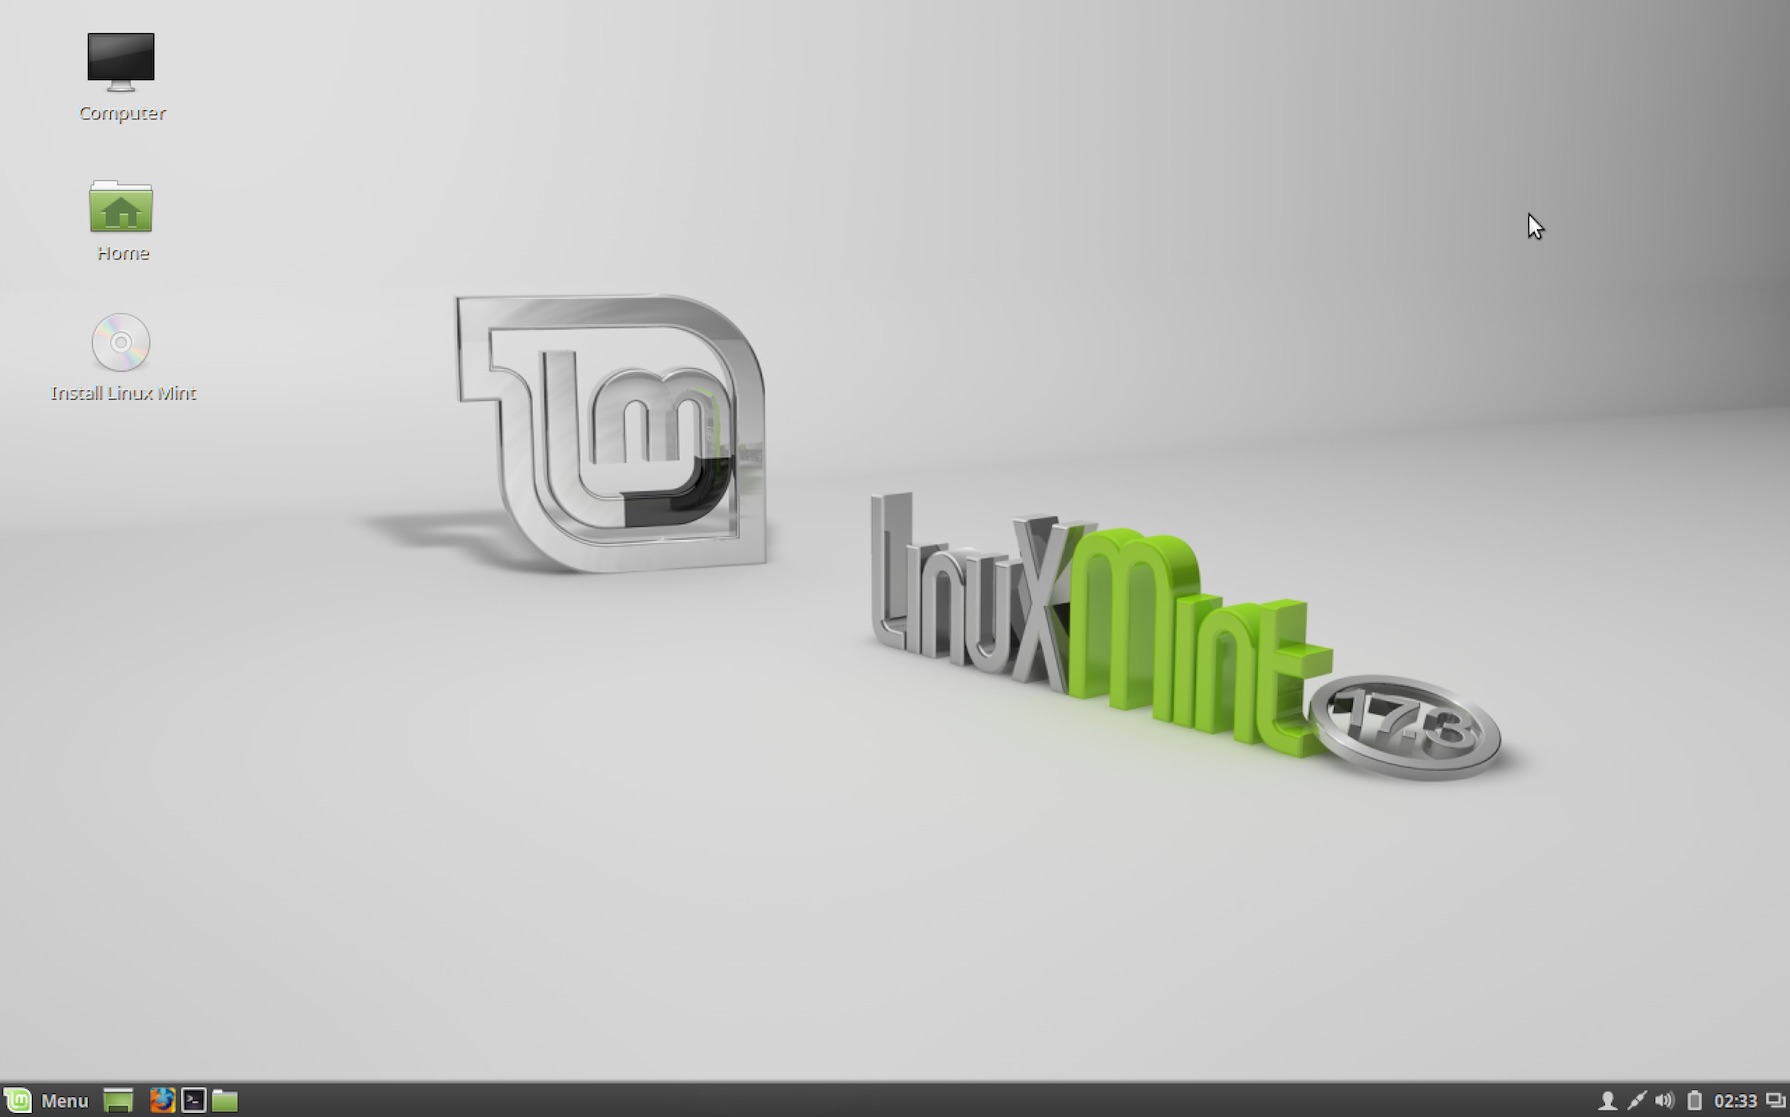 Linux Mint default desktop